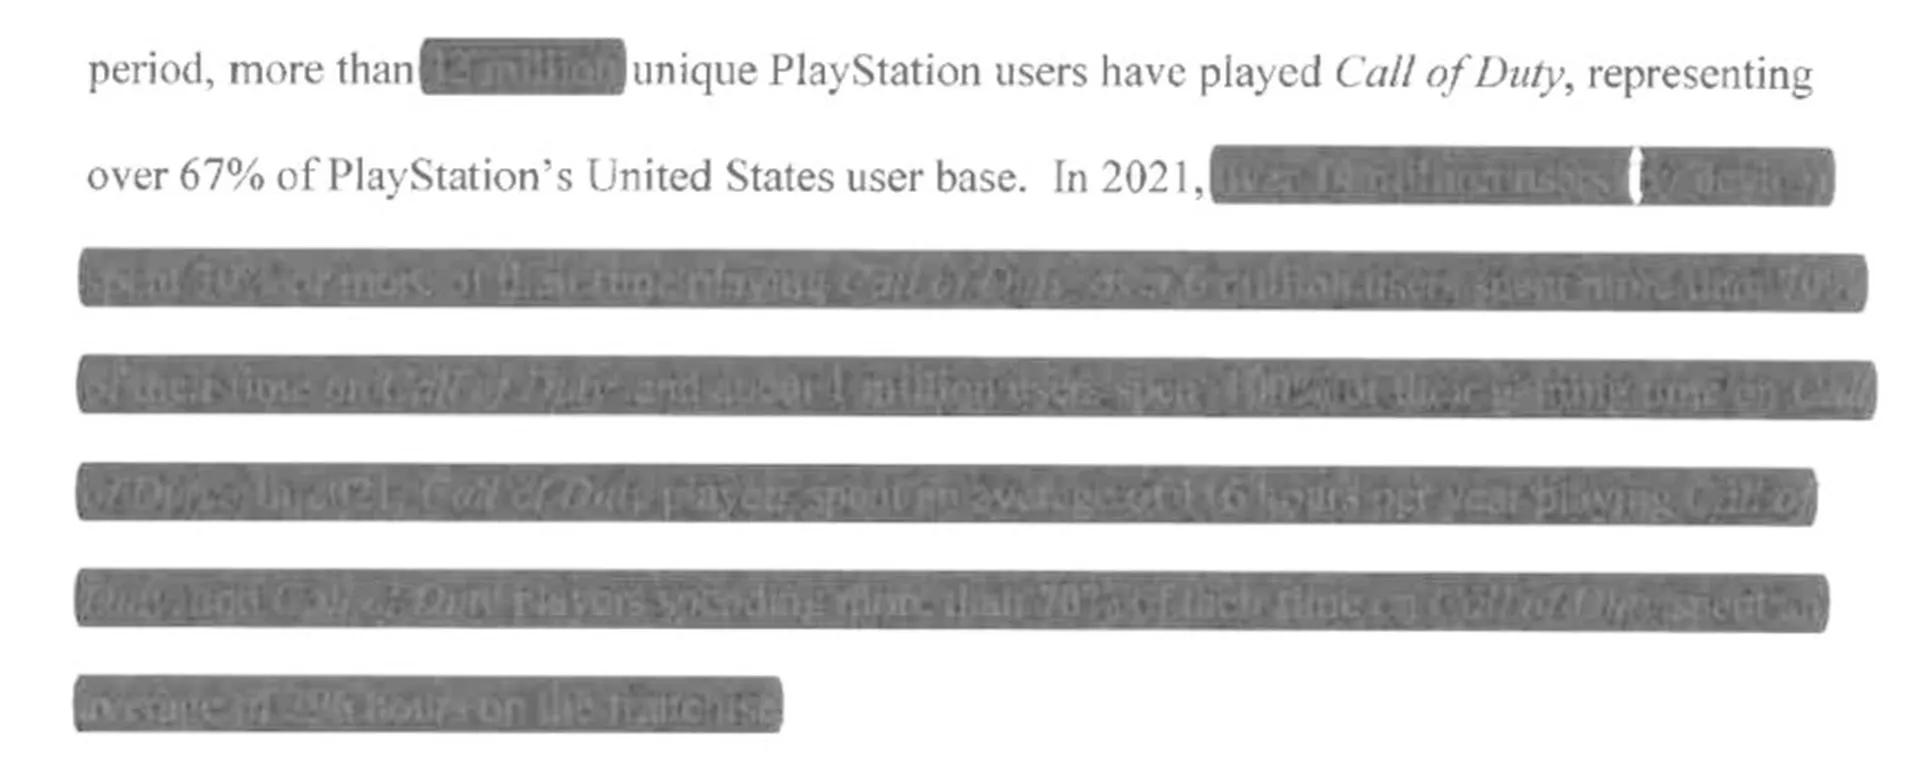 Circa 1 milione di utenti PlayStation gioca solo a Call of Duty